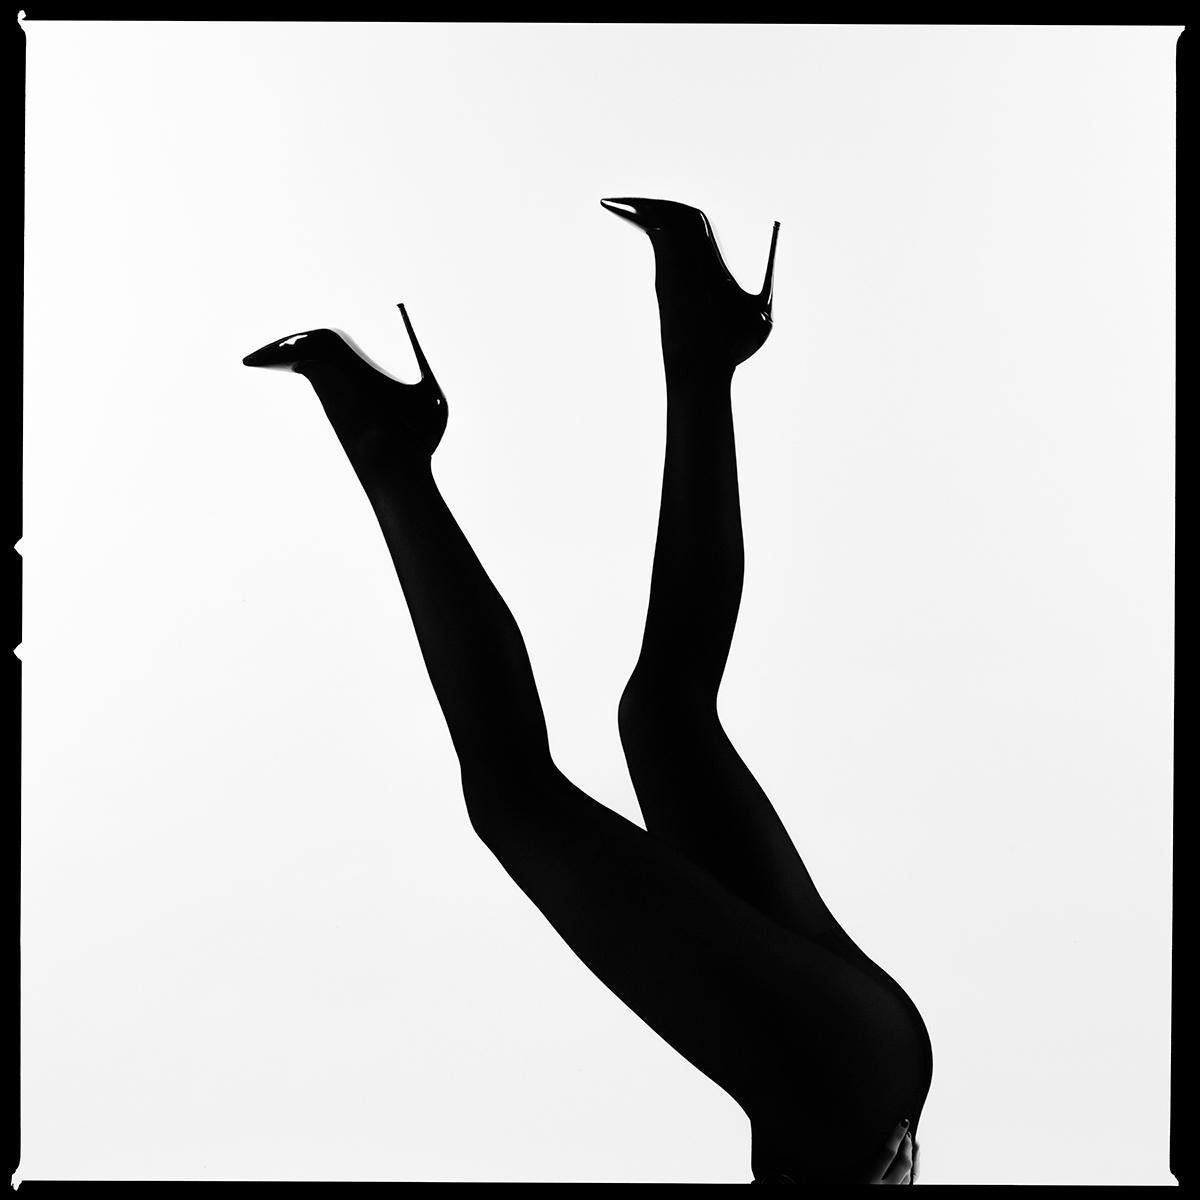 Serie: Legs Up Silhouette
Chromogener Druck auf Kodak Endura Luster Papier
Alle verfügbaren Größen und Ausgaben:
18" x 18"
30" x 30"
45" x 45"
60" x 60"
70" x 70"
Ausgaben von 3 + 2 Artist Proofs

Tyler Shields ist Fotograf, Filmregisseur und Autor